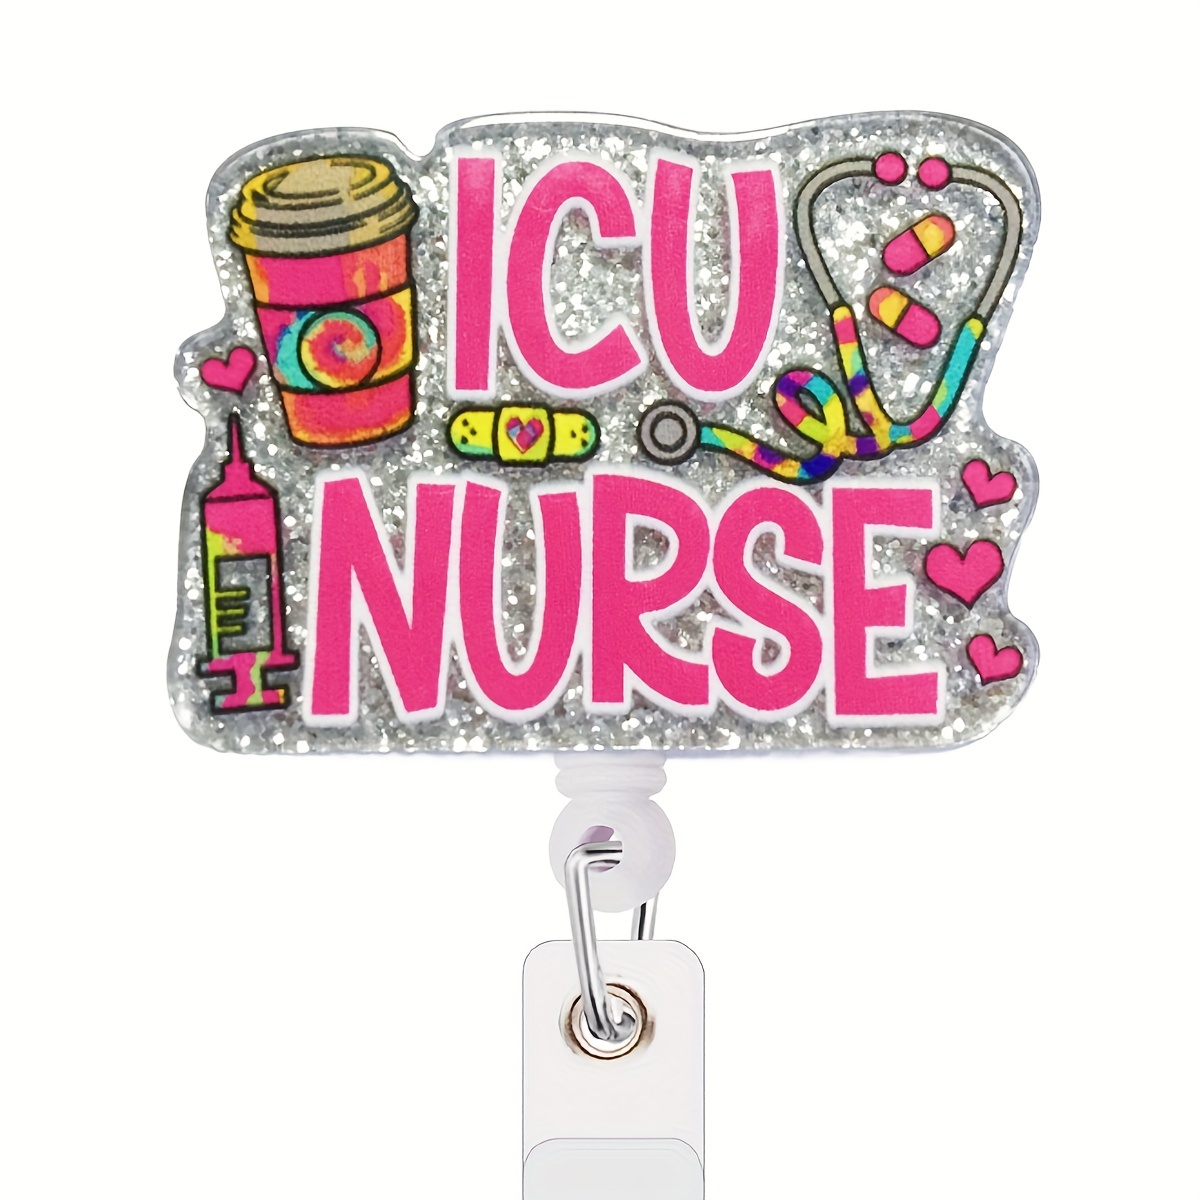 1pc Nurse Badge Reels, Medical Retractable Badge Reels Cute Nursing ID  Badge Reels Holder For Nurses Doctor Medical Health Hospital Office Worker  NR G